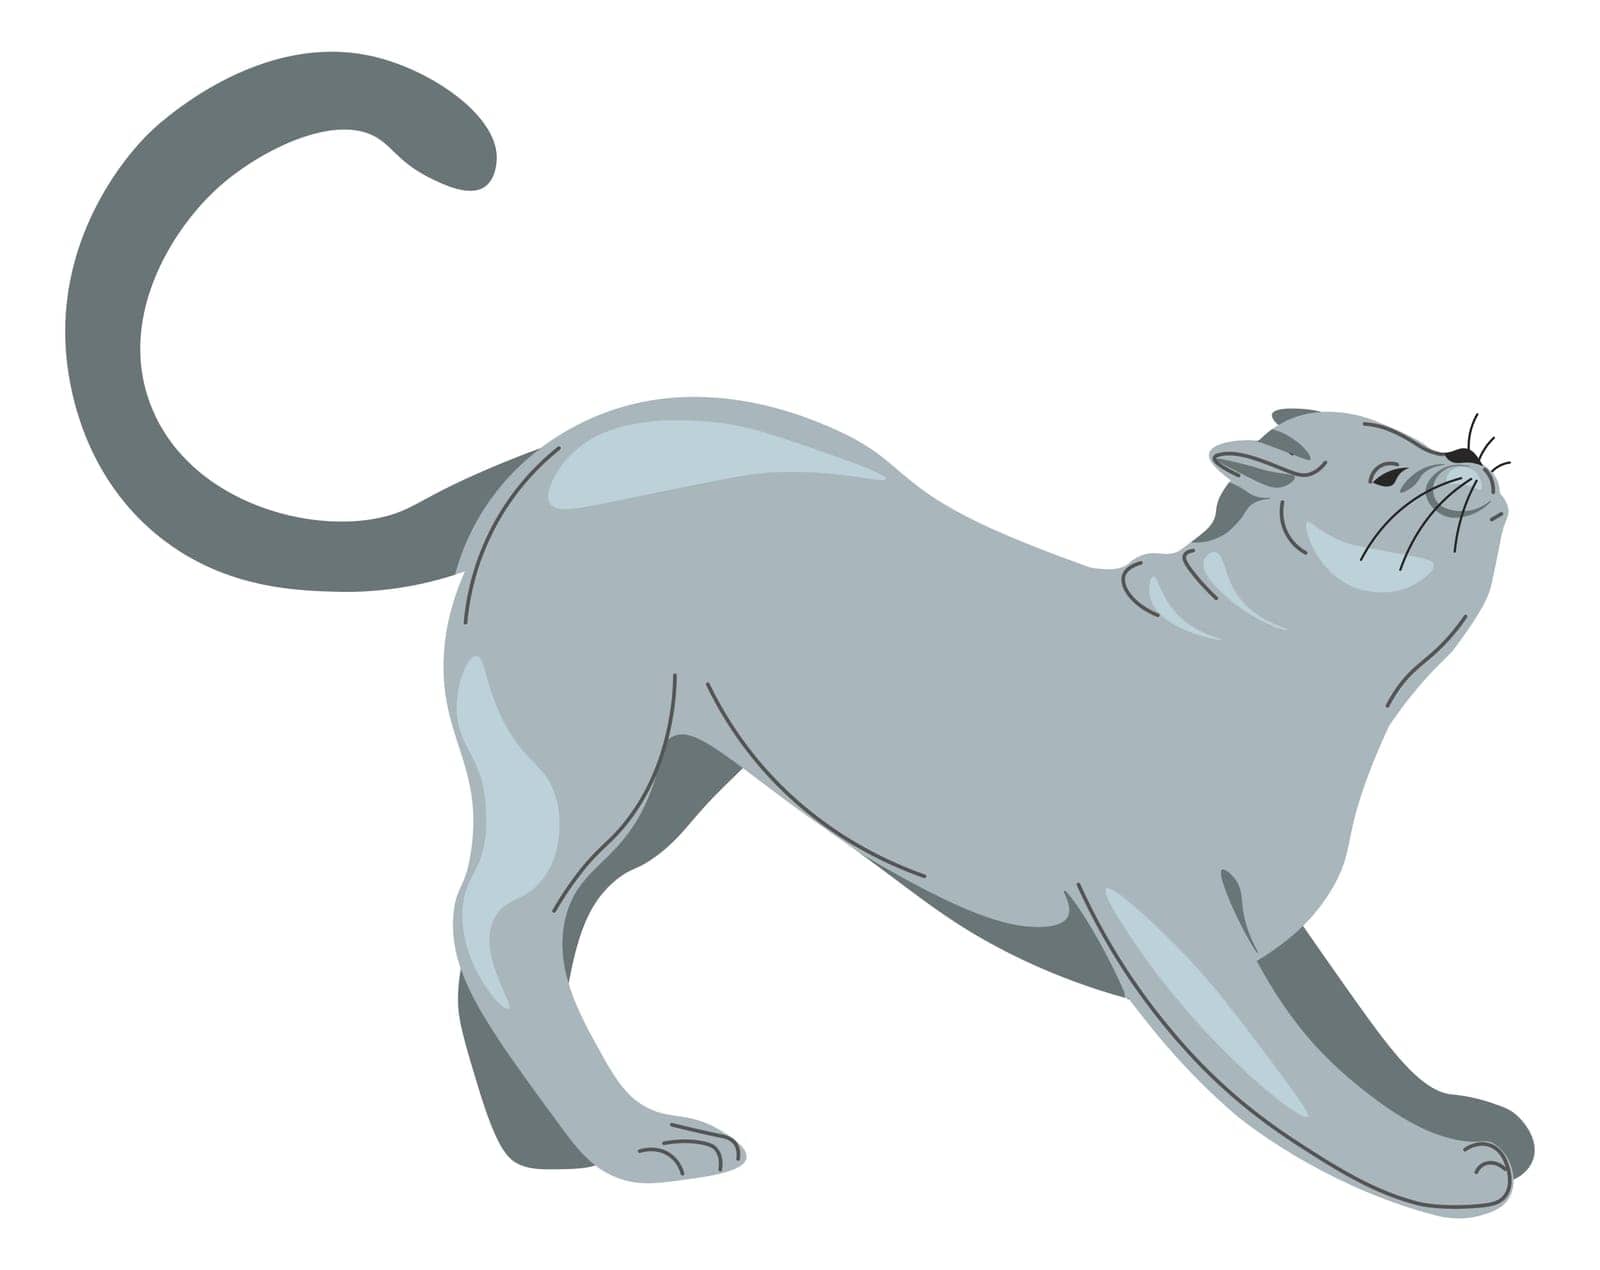 Stretching grey cat, feline animal portrait kitty by Sonulkaster